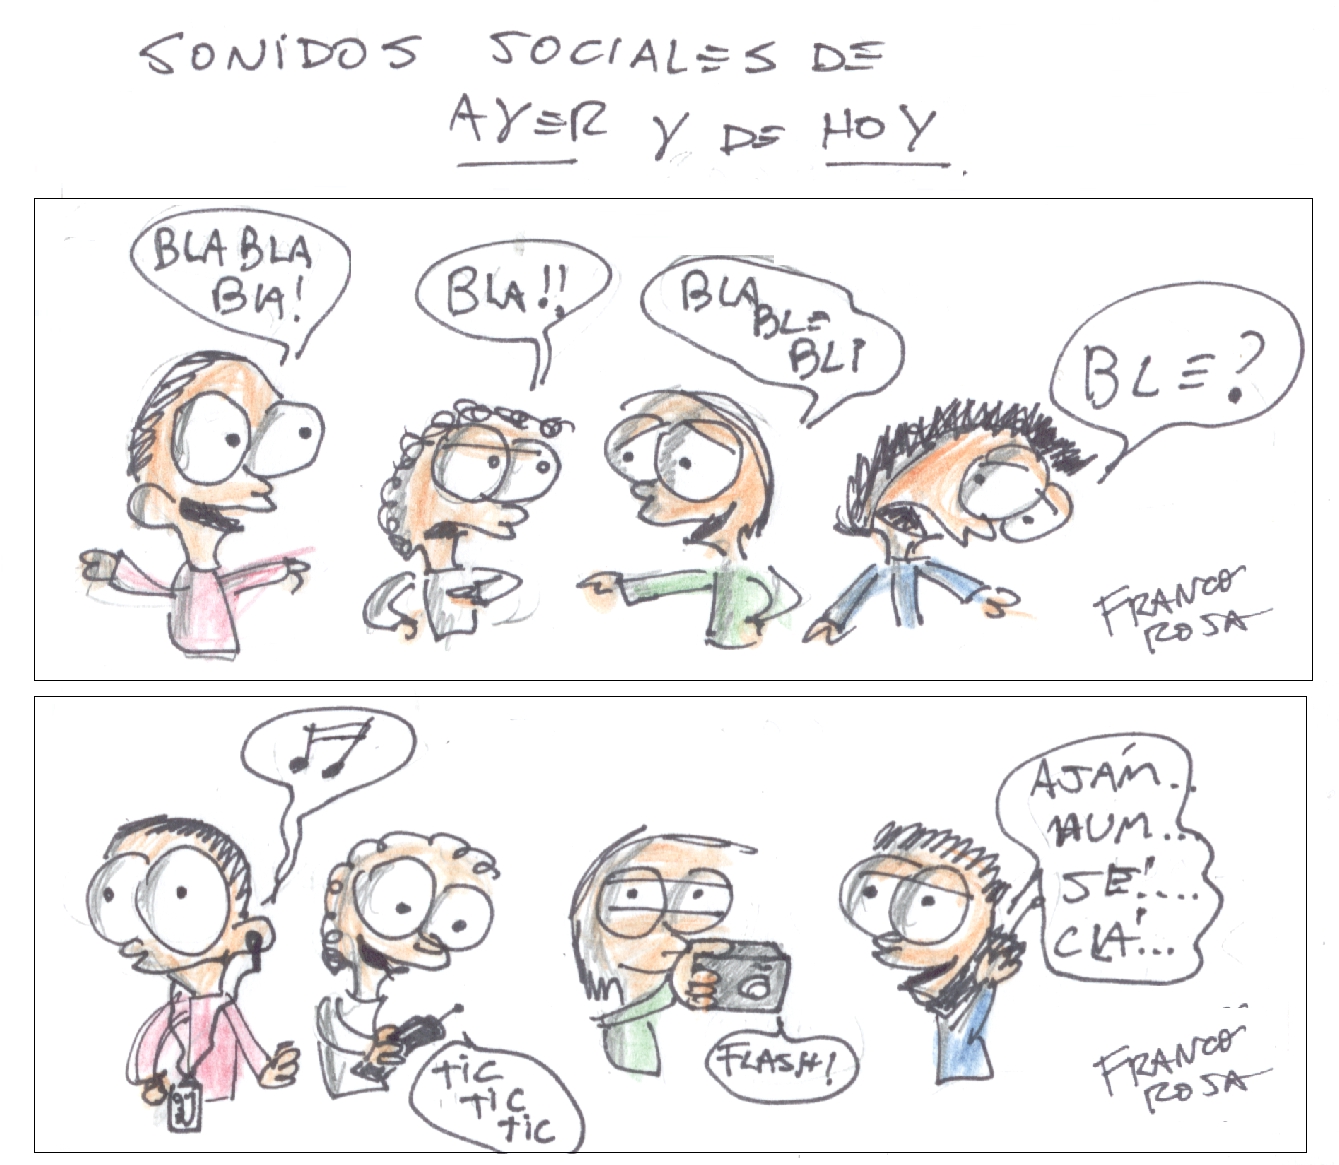 [Sonidos+Sociales.jpg]